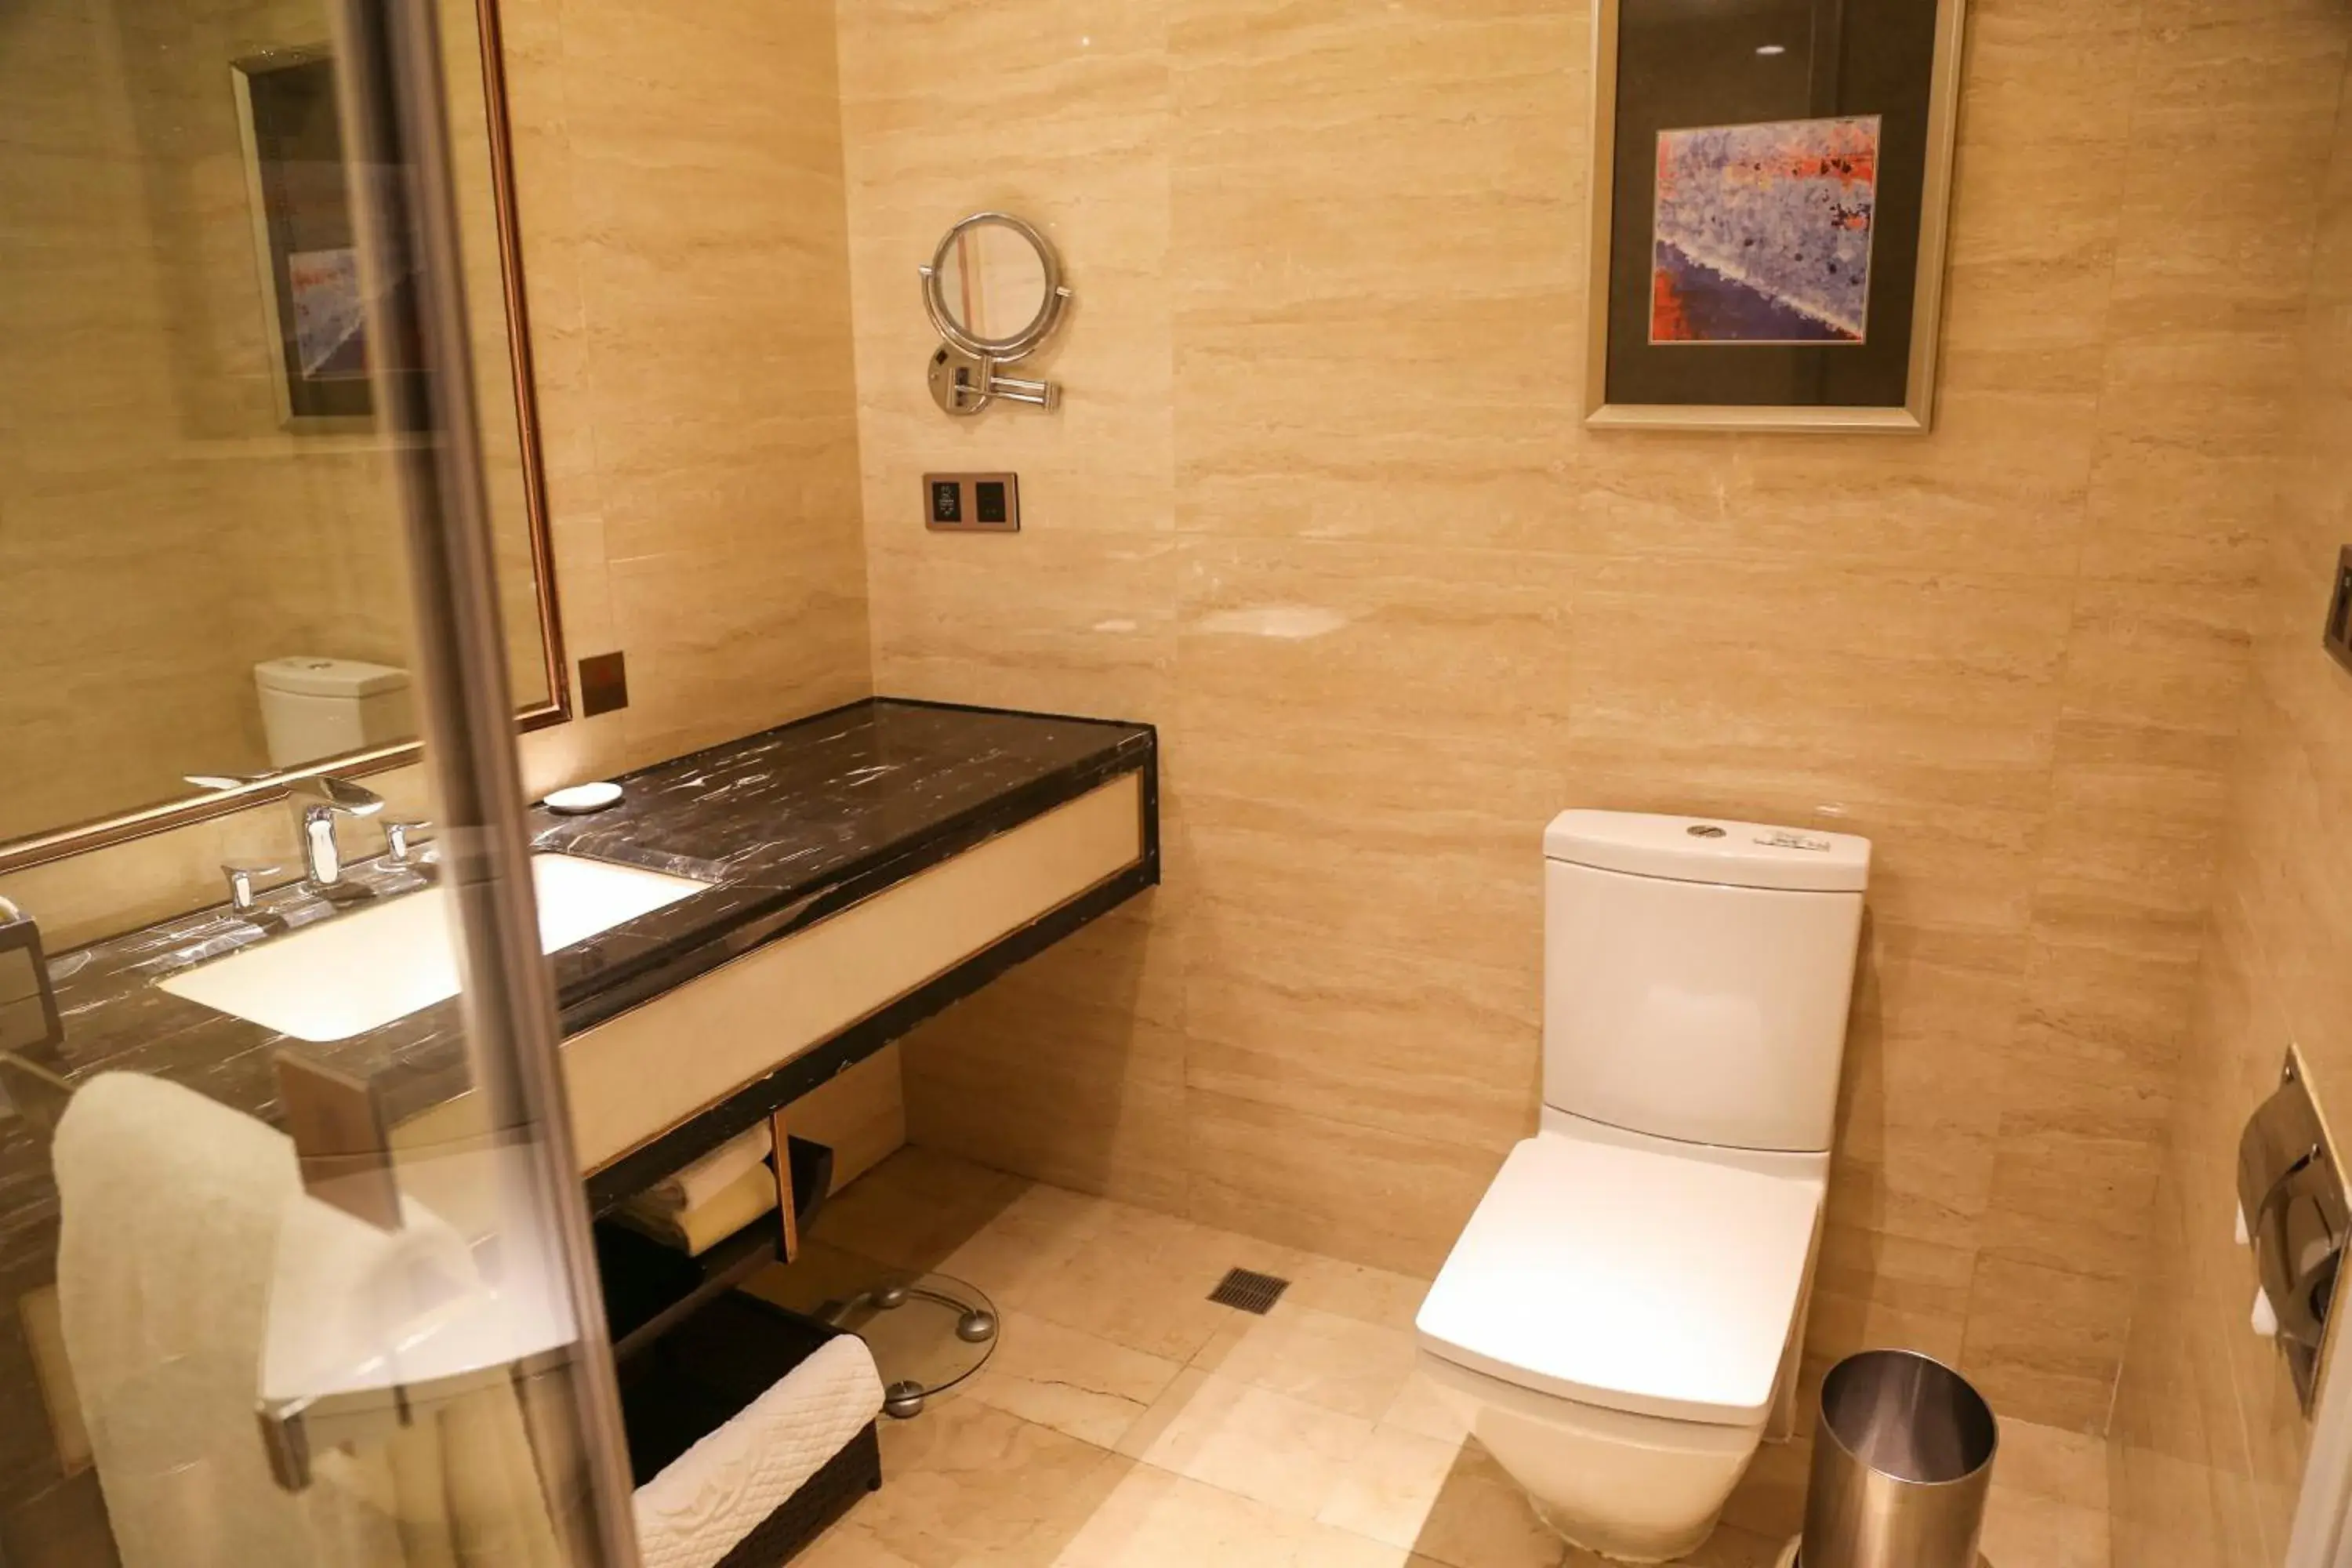 Toilet, Bathroom in Shenzhen Dayhello international Hotel (Baoan)